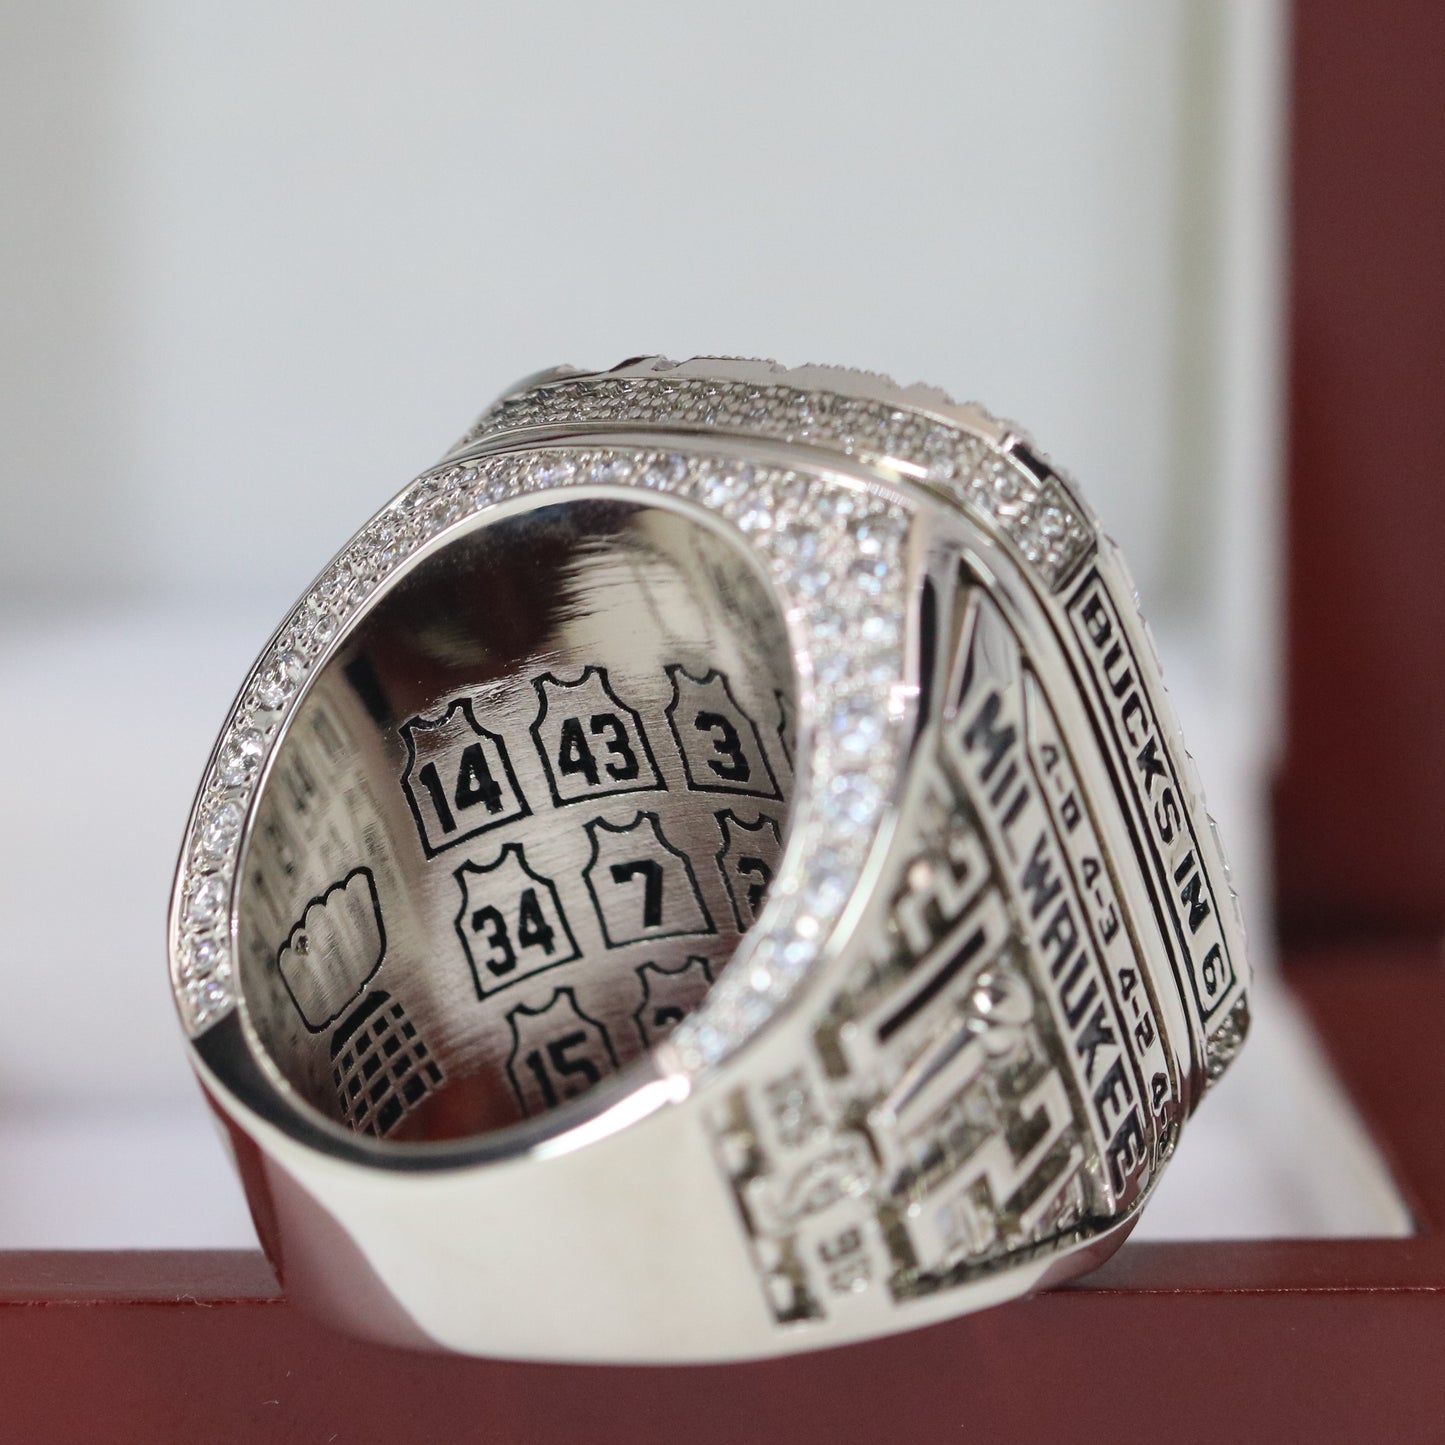 Milwaukee Bucks NBA Championship Ring Replica (2021) - Premium Series - Rings For Champs, NFL rings, MLB rings, NBA rings, NHL rings, NCAA rings, Super bowl ring, Superbowl ring, Super bowl rings, Superbowl rings, Dallas Cowboys